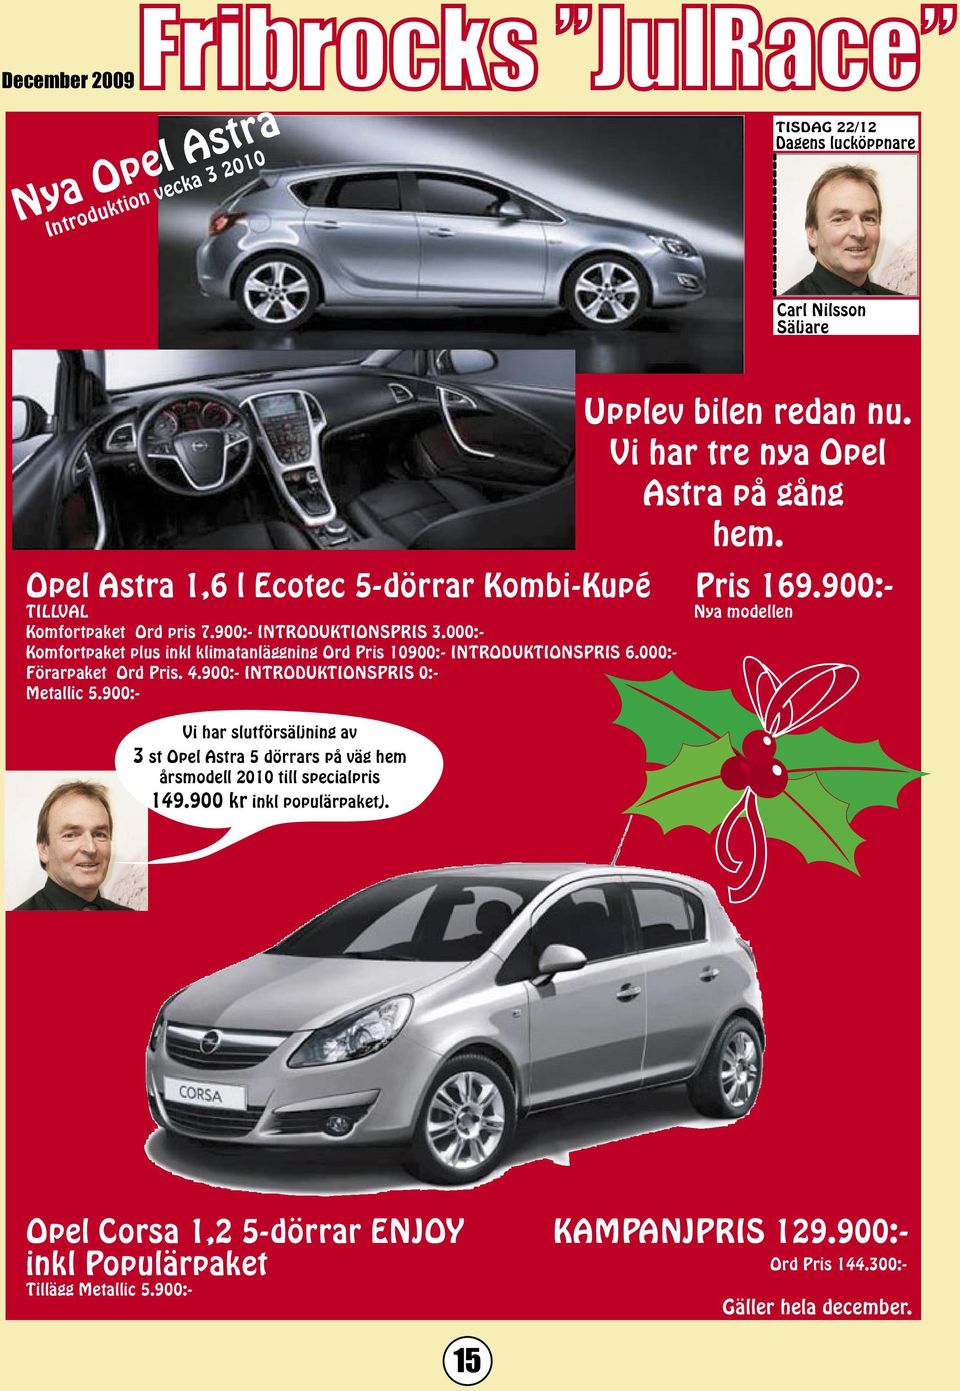 900:- INTRODUKTIONSPRIS 0:- Metallic 5.900:- Vi har slutförsäljning av 3 st Opel Astra 5 dörrars på väg hem årsmodell 2010 till specialpris 149.900 kr inkl populärpaket).